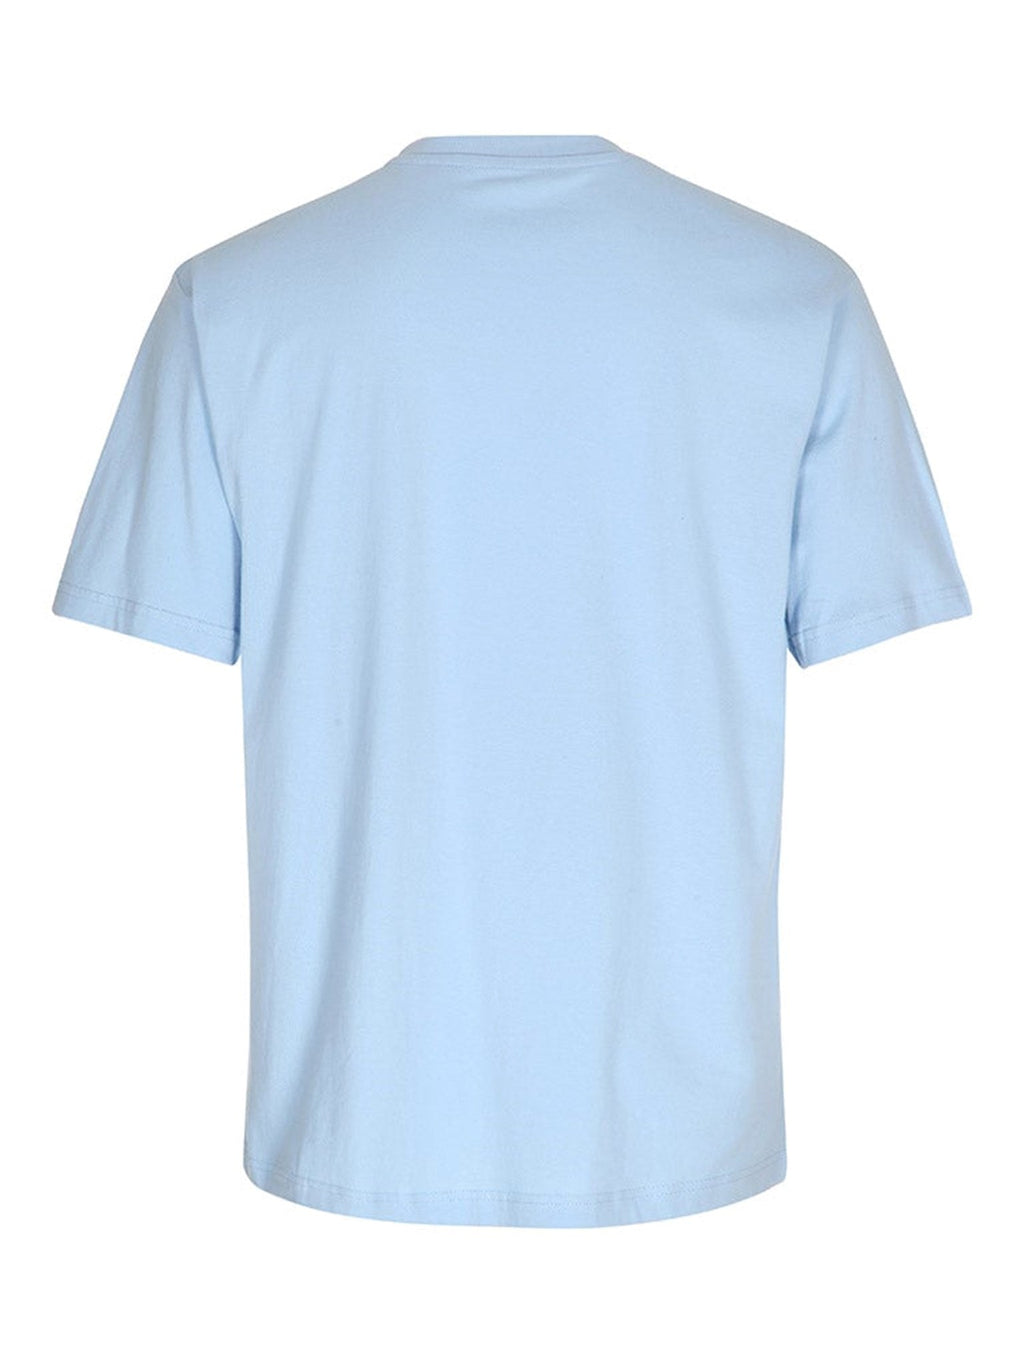 Oversized t-shirt - Light Blue (Women)